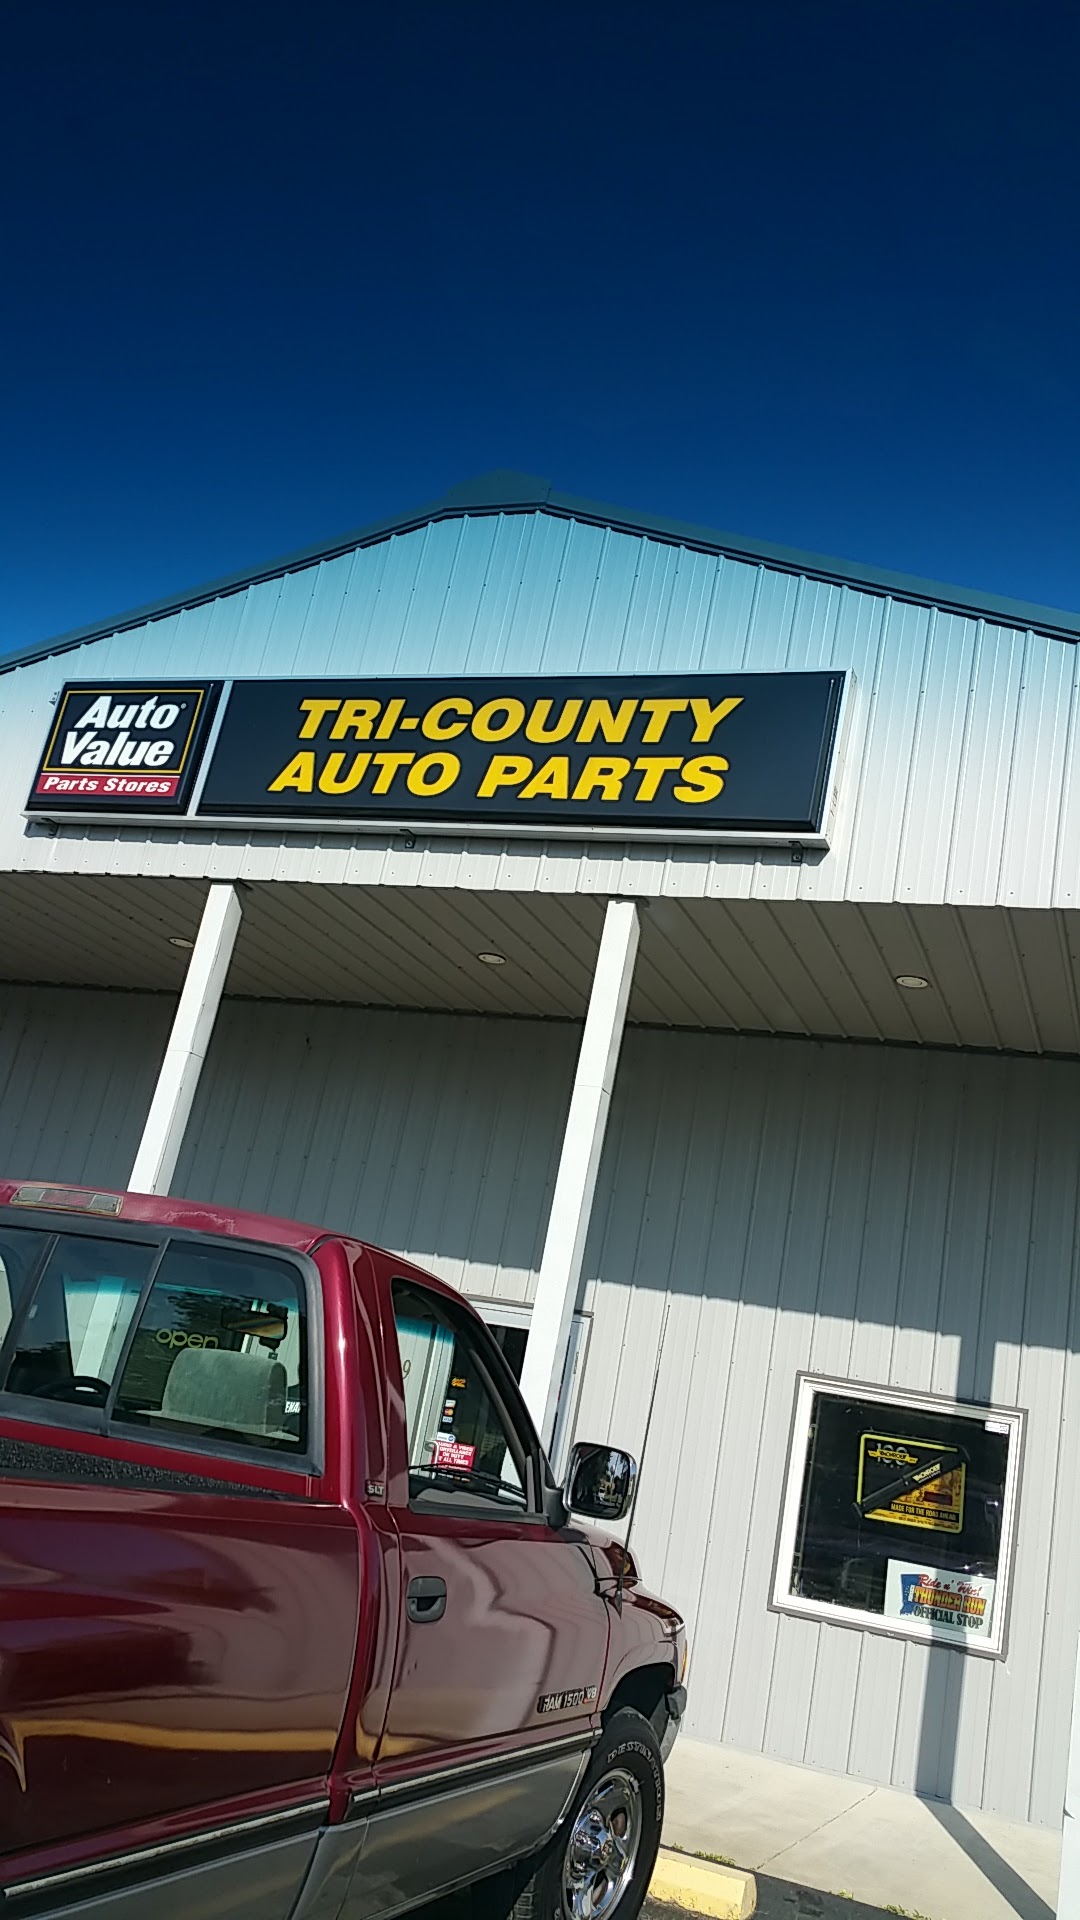 Tri-County Auto Parts